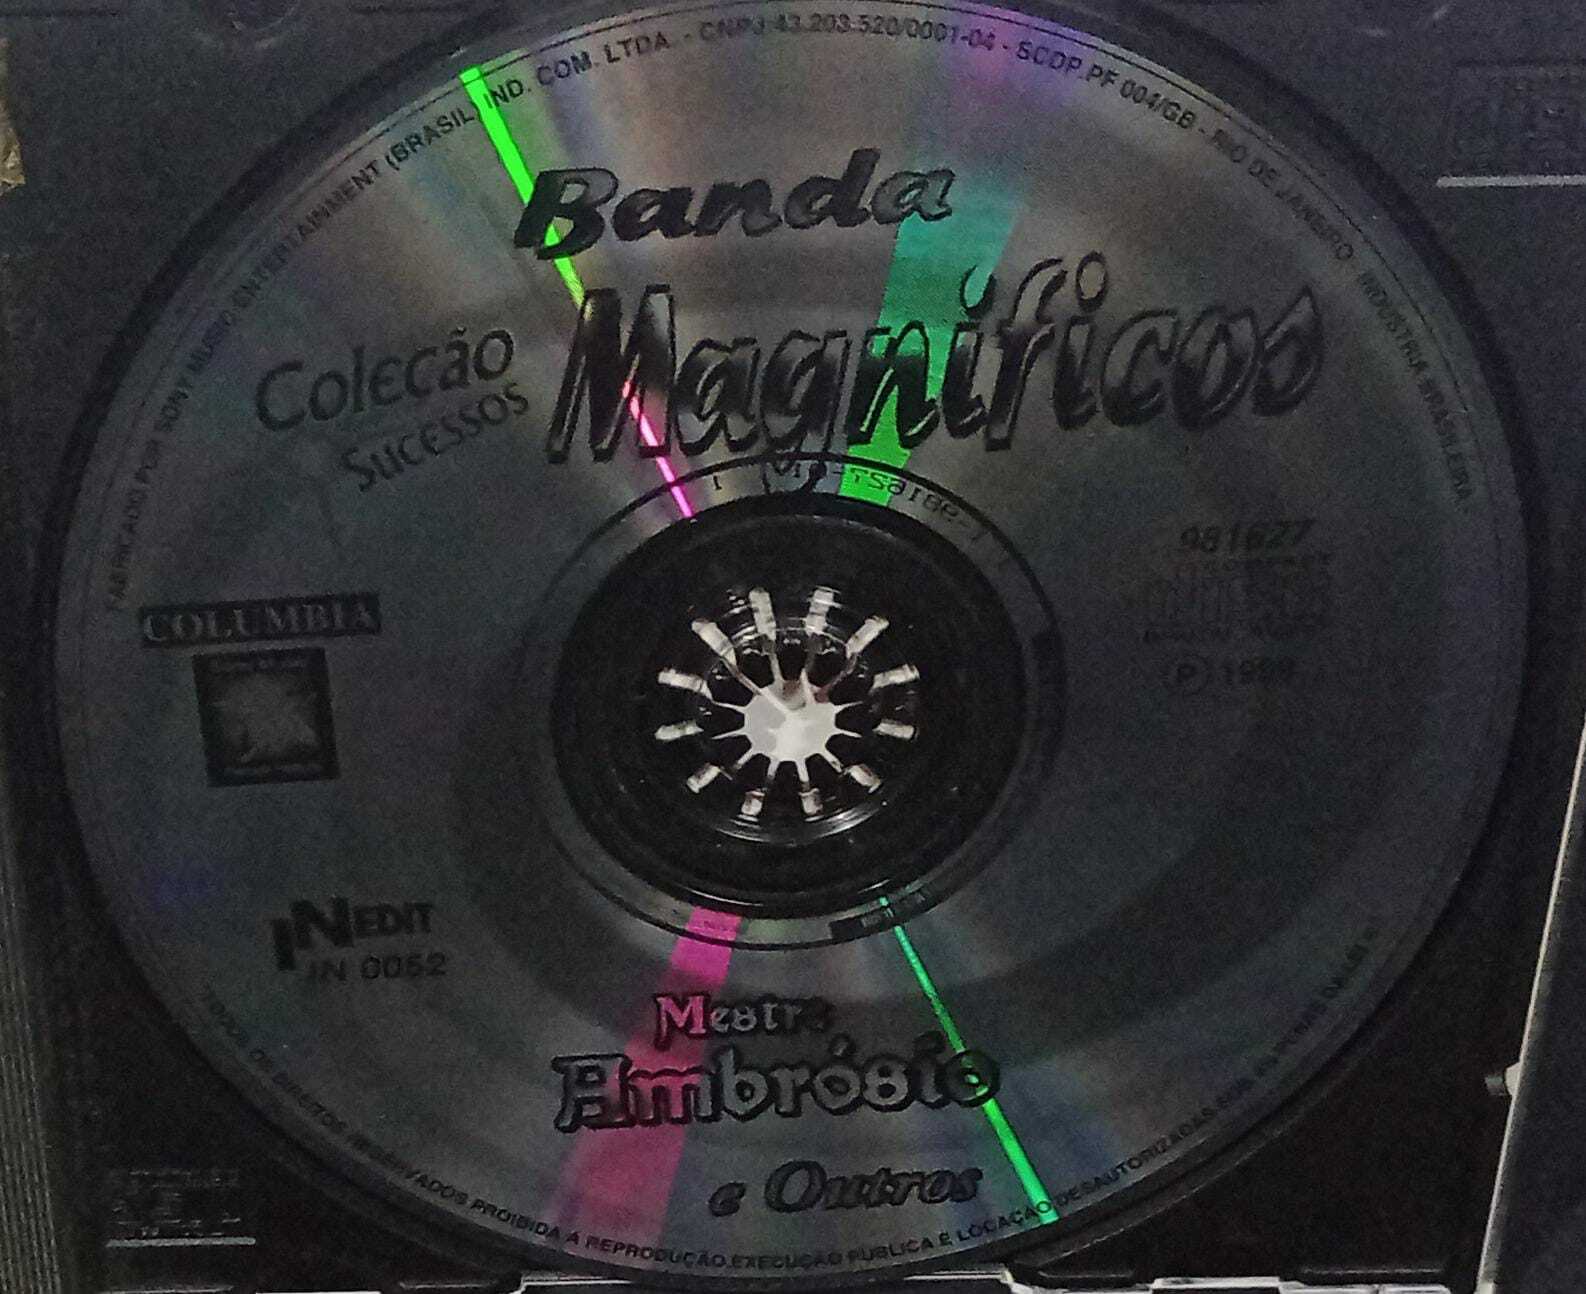 CD - Coleção sucessos - Banda Magnificos